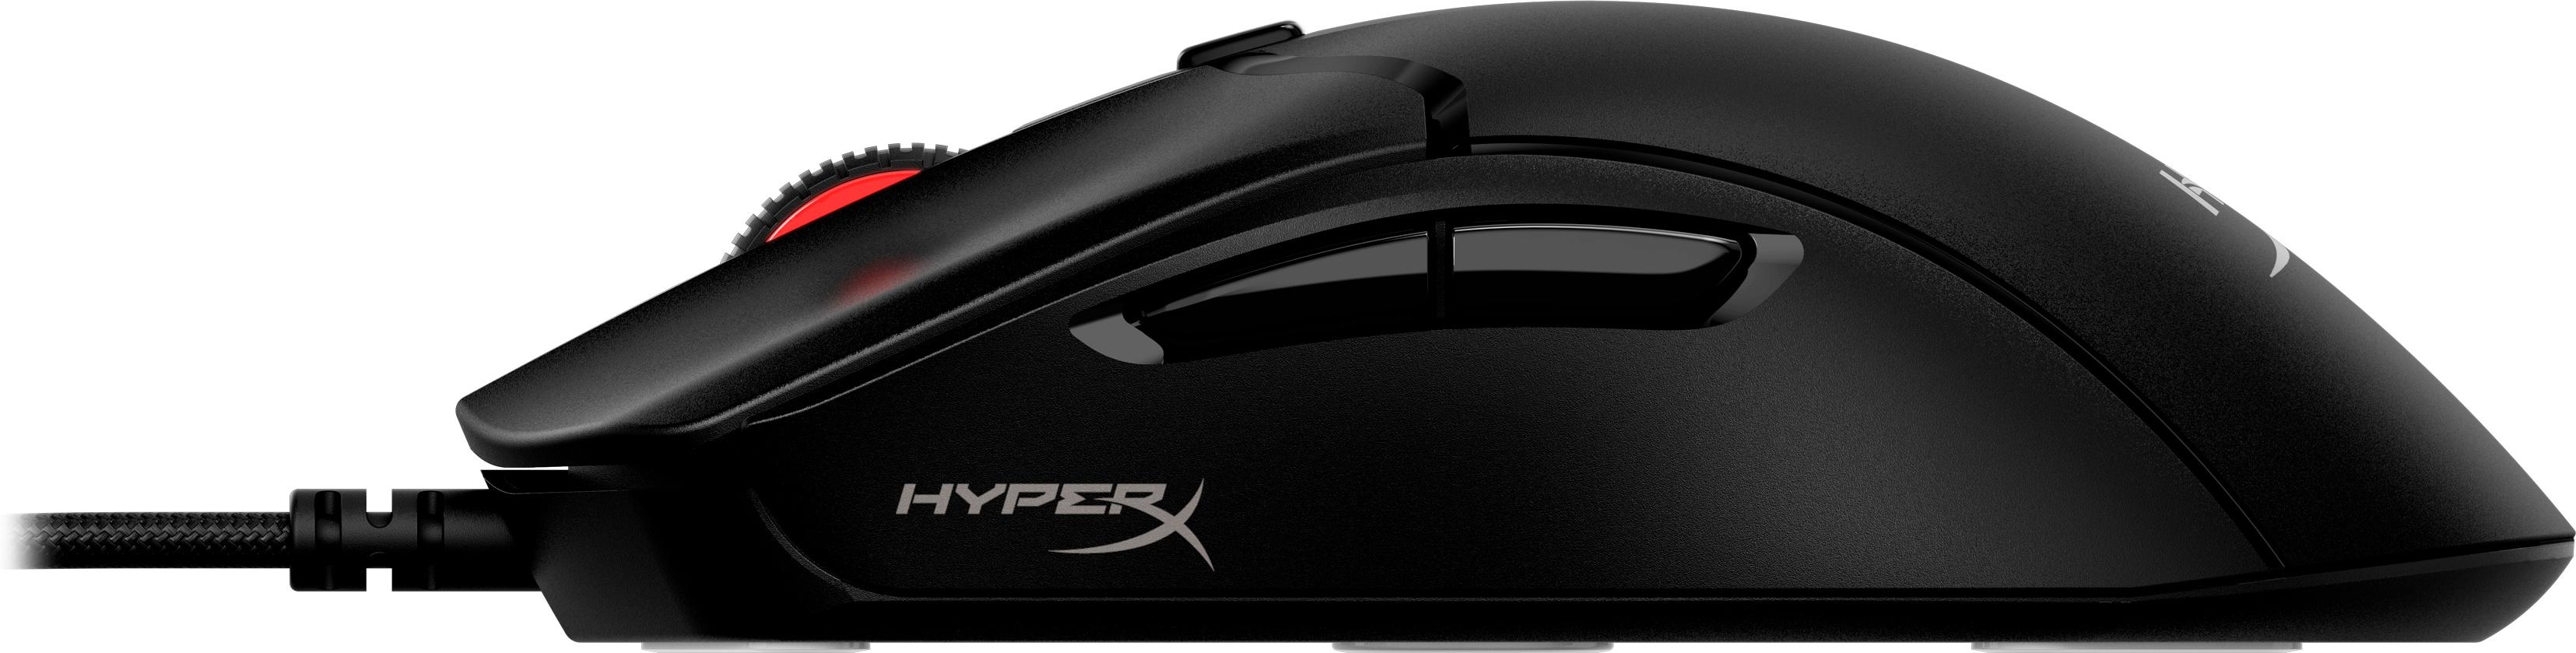 HyperX - Ratón HyperX Pulsefire Haste 2 26000DPI Negro